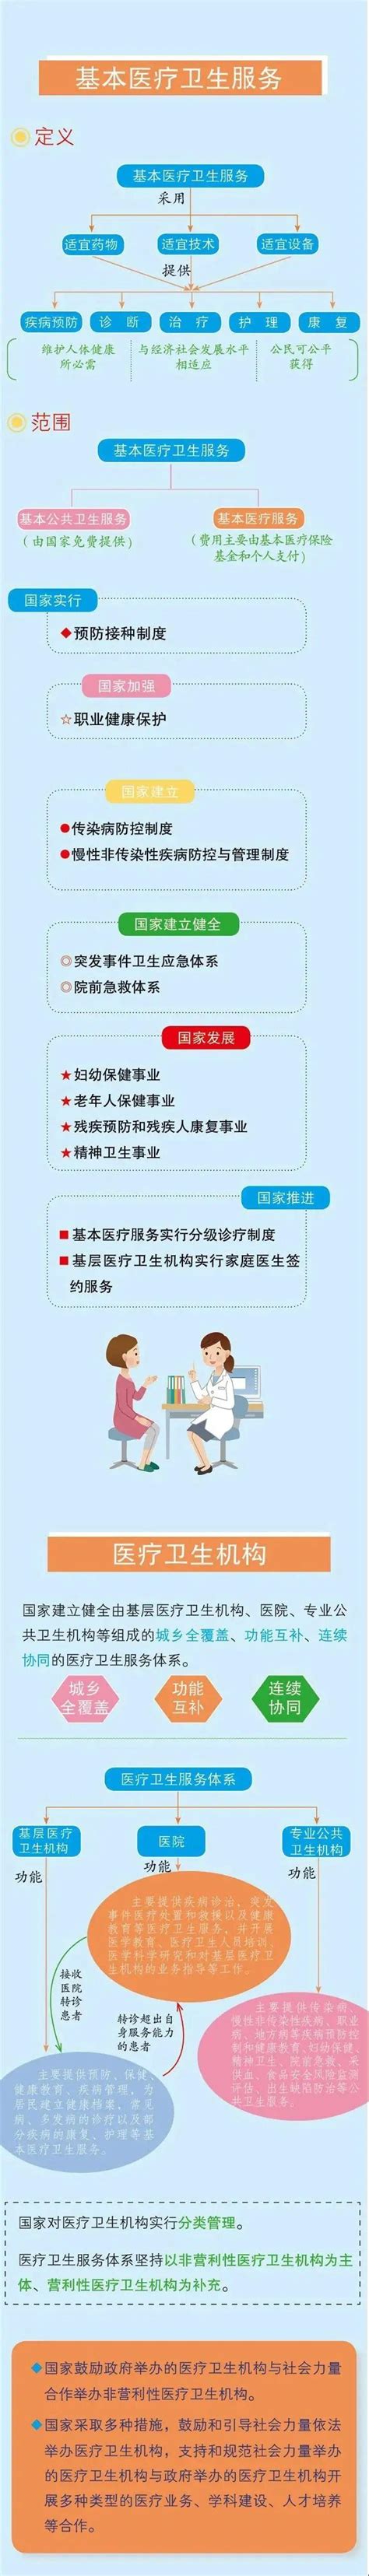 【图文解读】《中华人民共和国基本医疗卫生与健康促进法》-宁国市人民政府